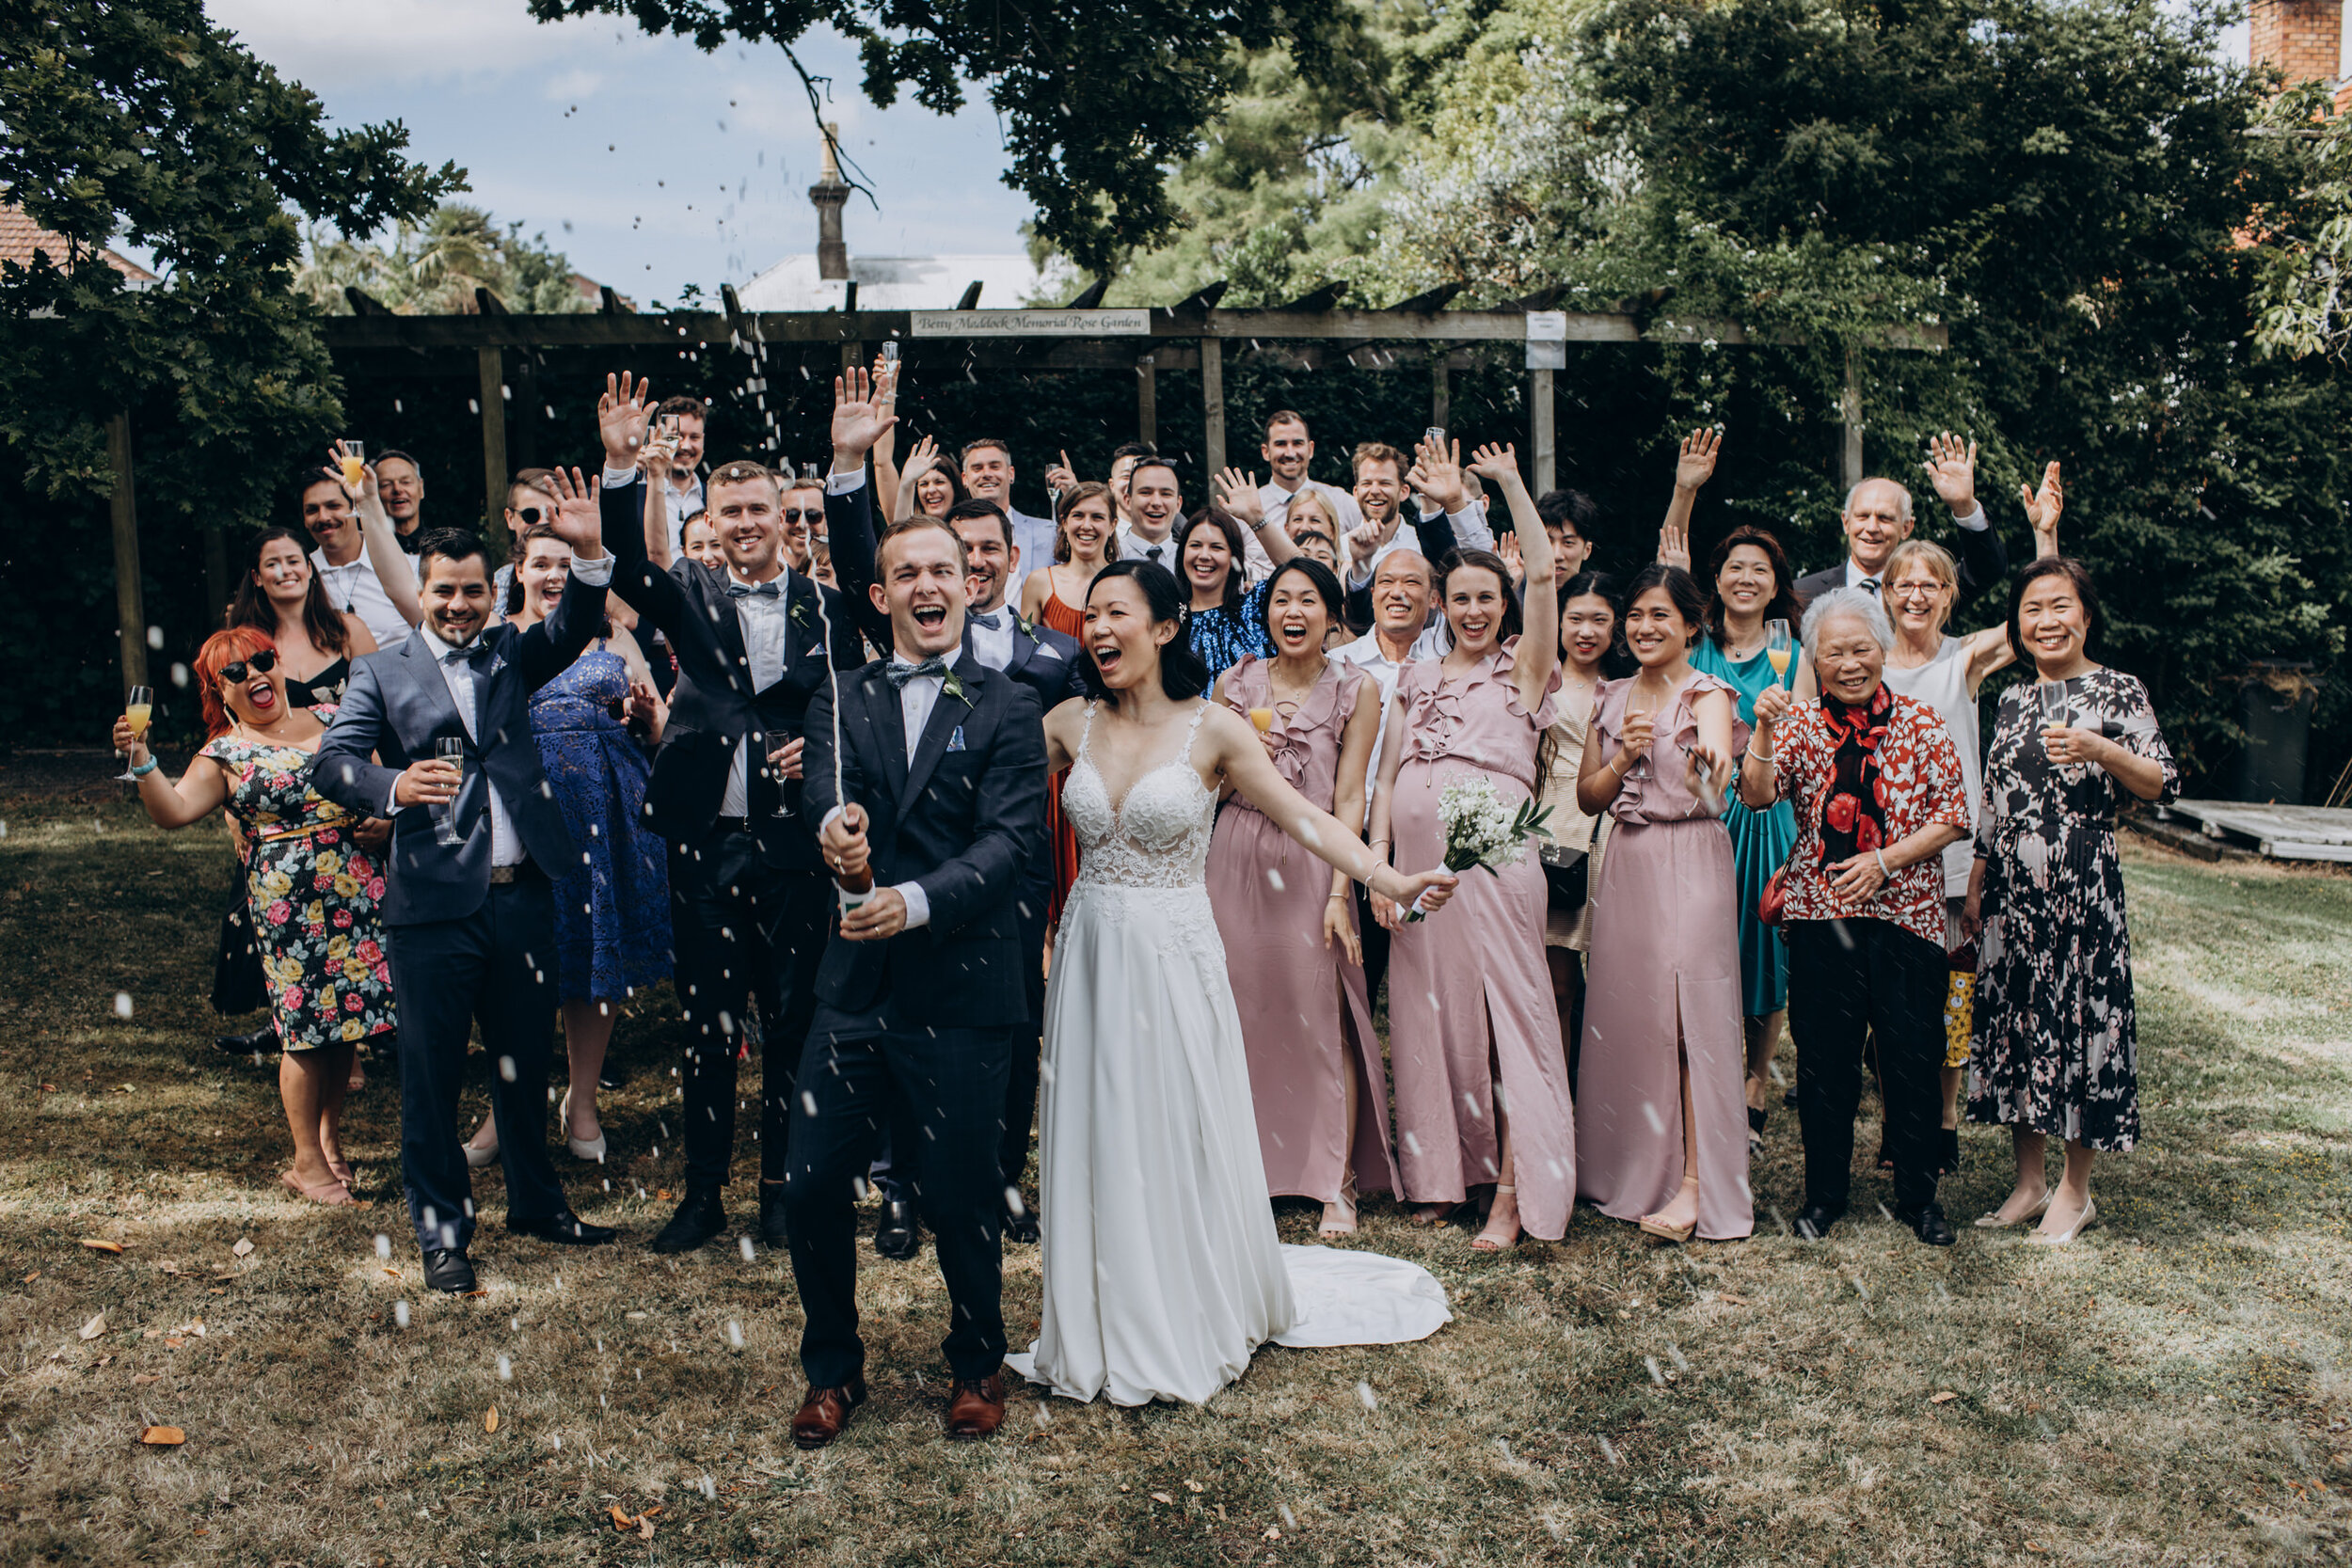 New Zealand Wedding | Parnell rose garden wedding photos | Elopement wedding photographer  